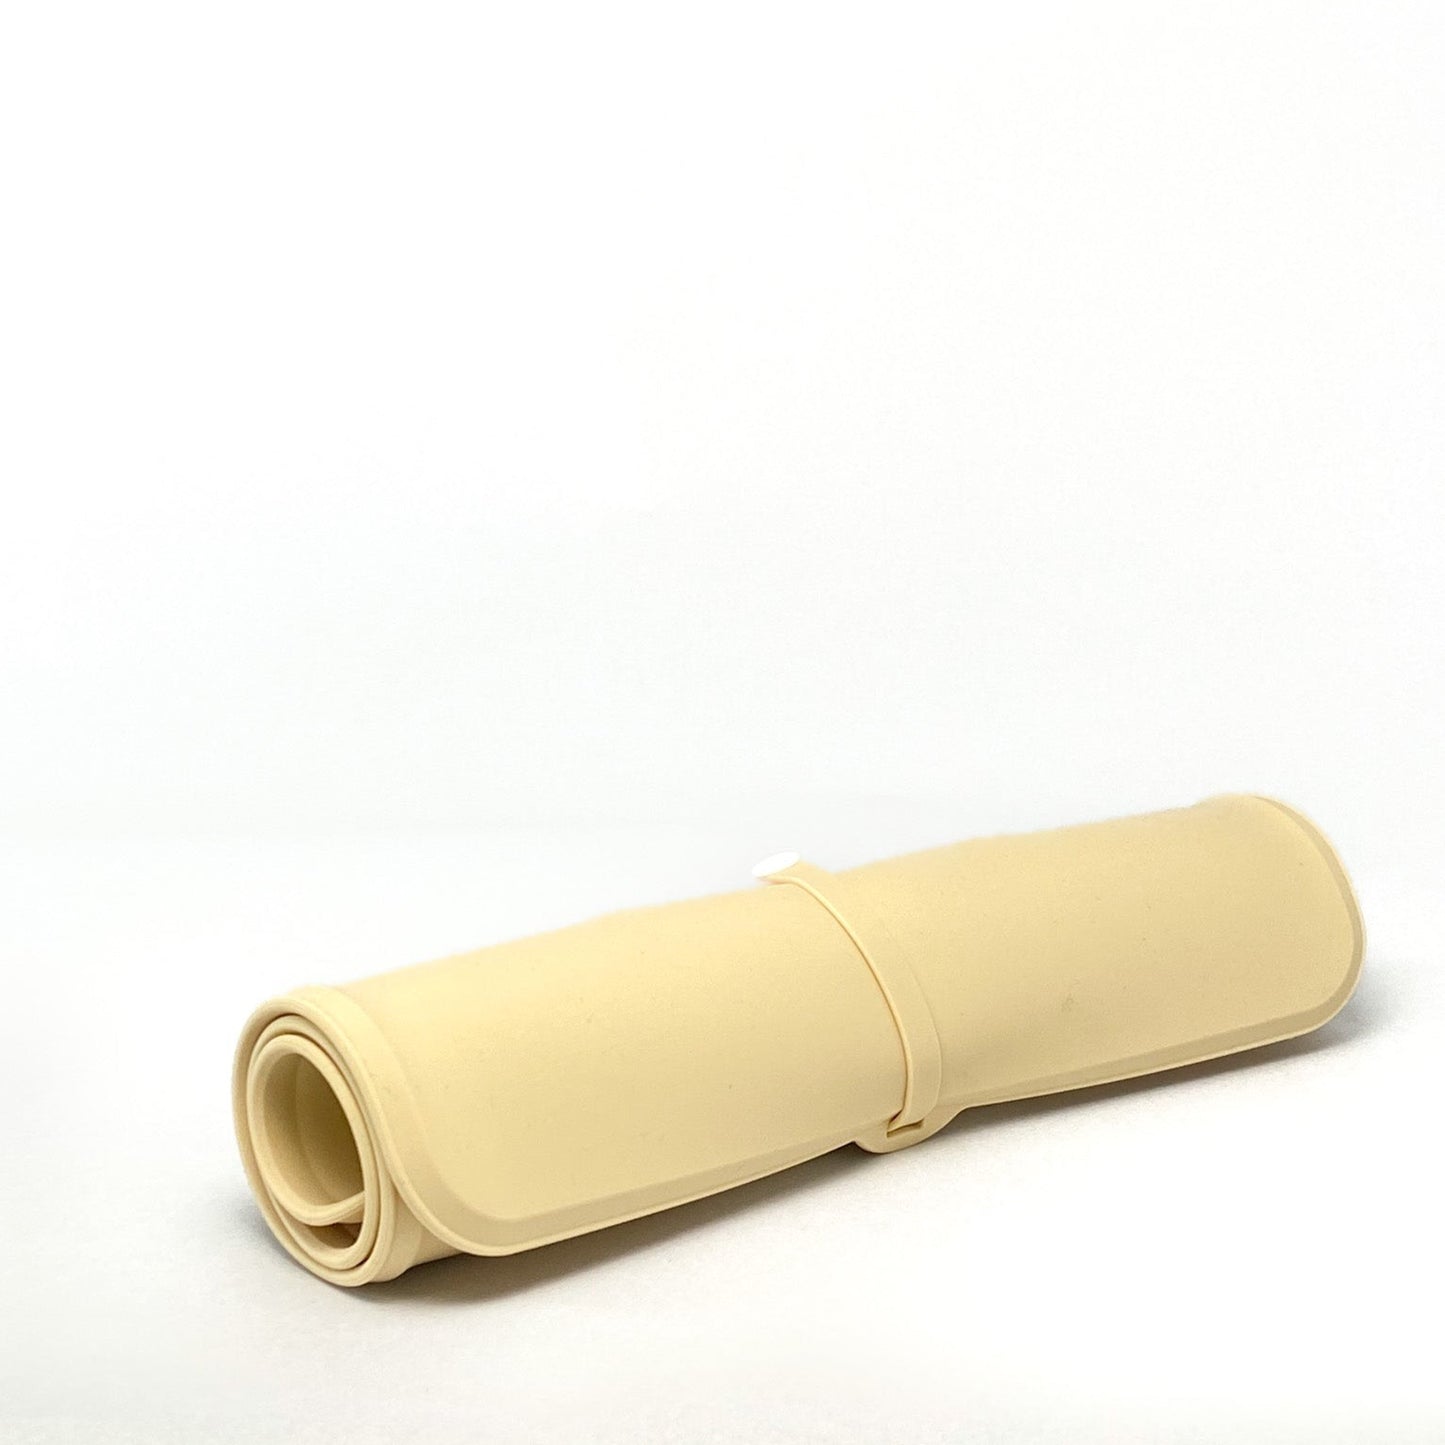 Oprolbare Water- en Voerbak voor Onderweg - Reisvoerbak met Silicone Placemat - Beige - 40 x 24 cm